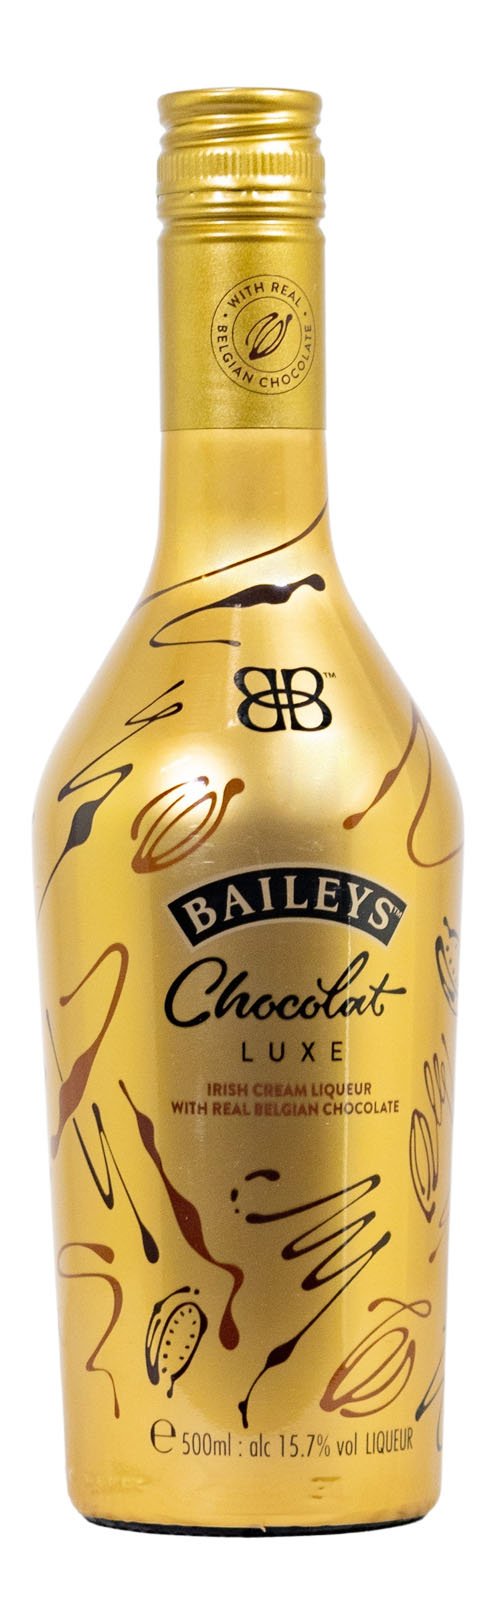 Baileys Chocolat Luxe Gold Edition (0,5L) günstig kaufen